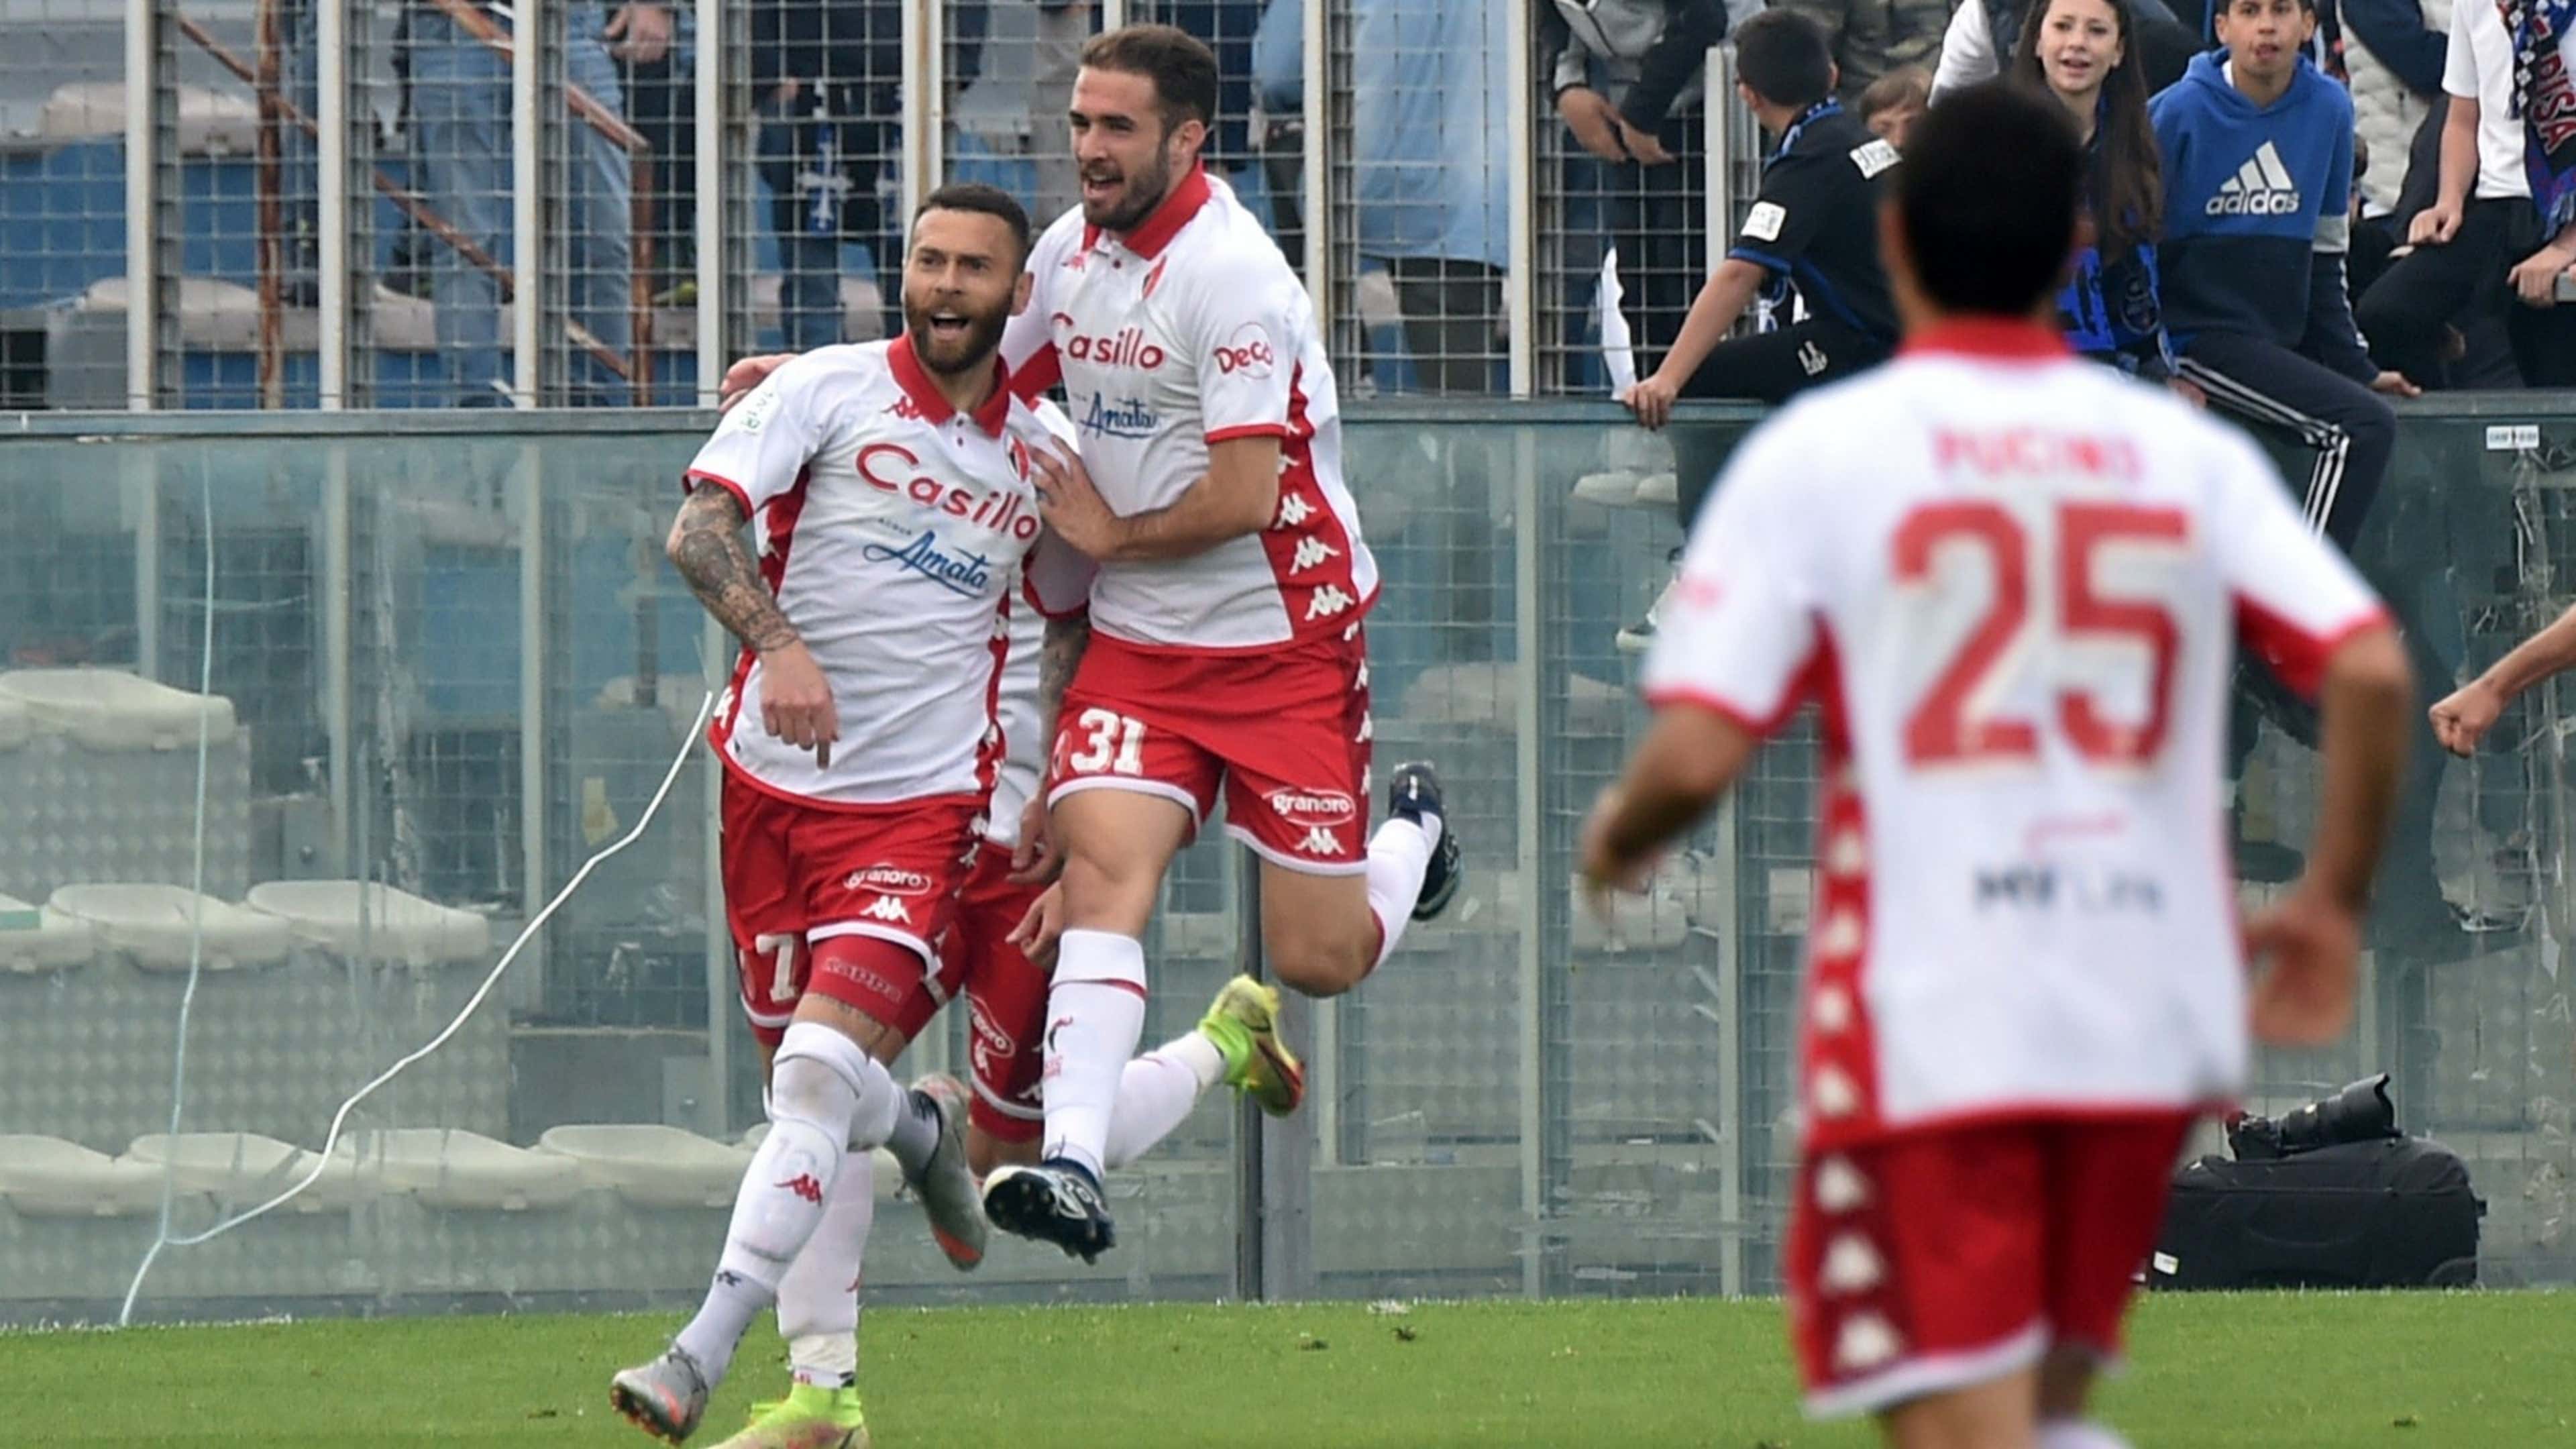 Serie B's Boxing Day makes history with Bari-Genoa - Football Italia